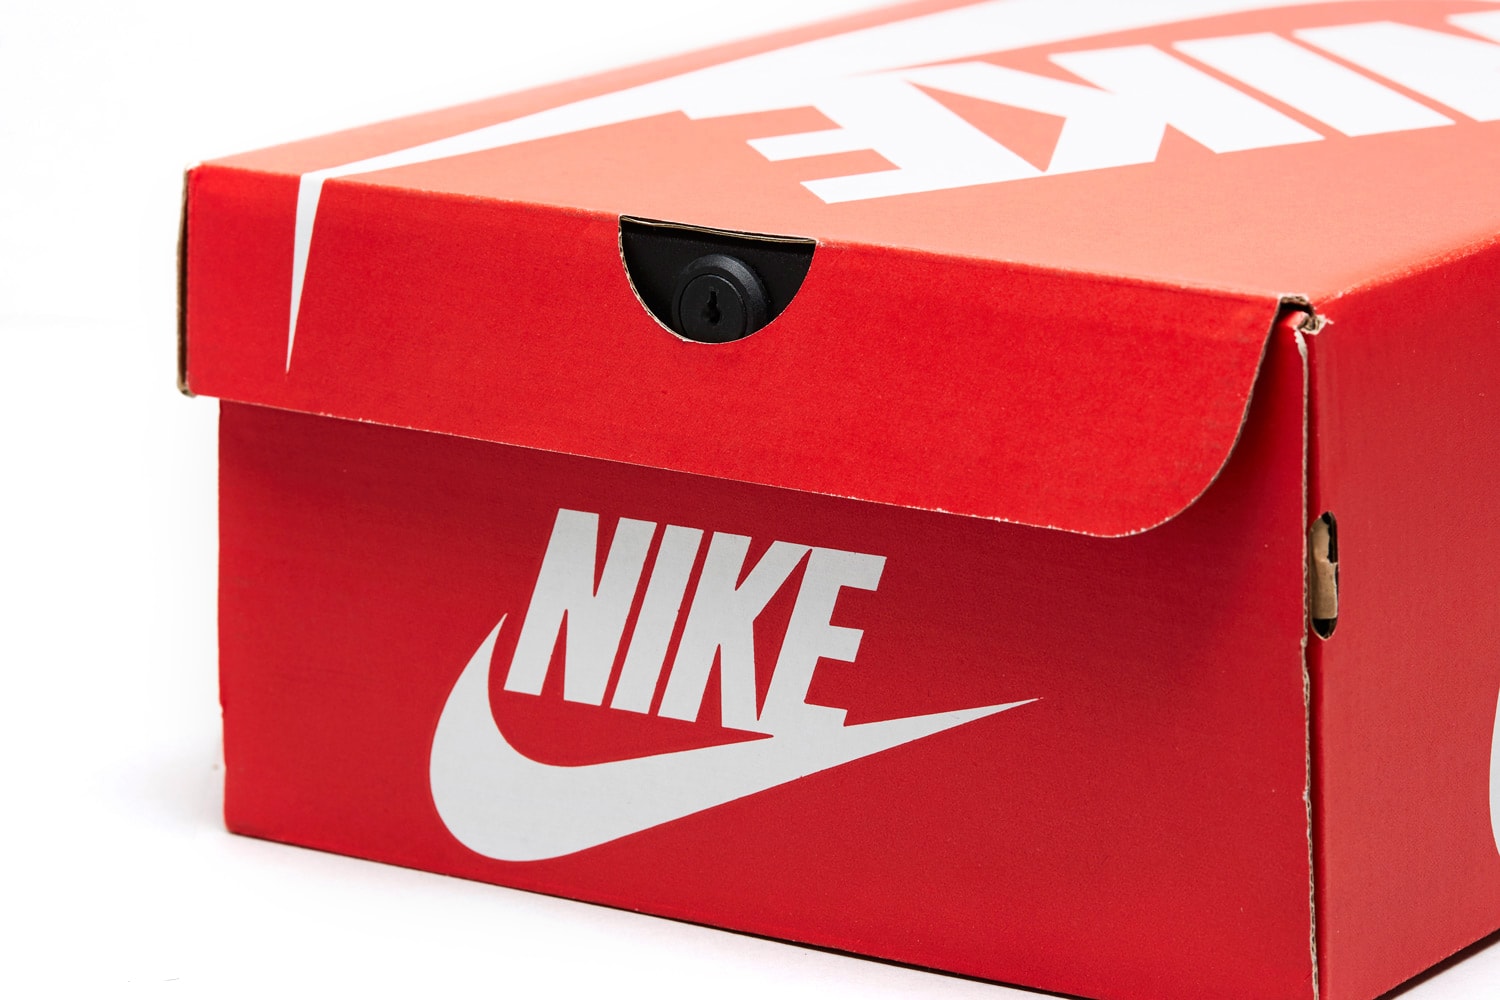 Mandem Safe Limited Nike Sneaker Box